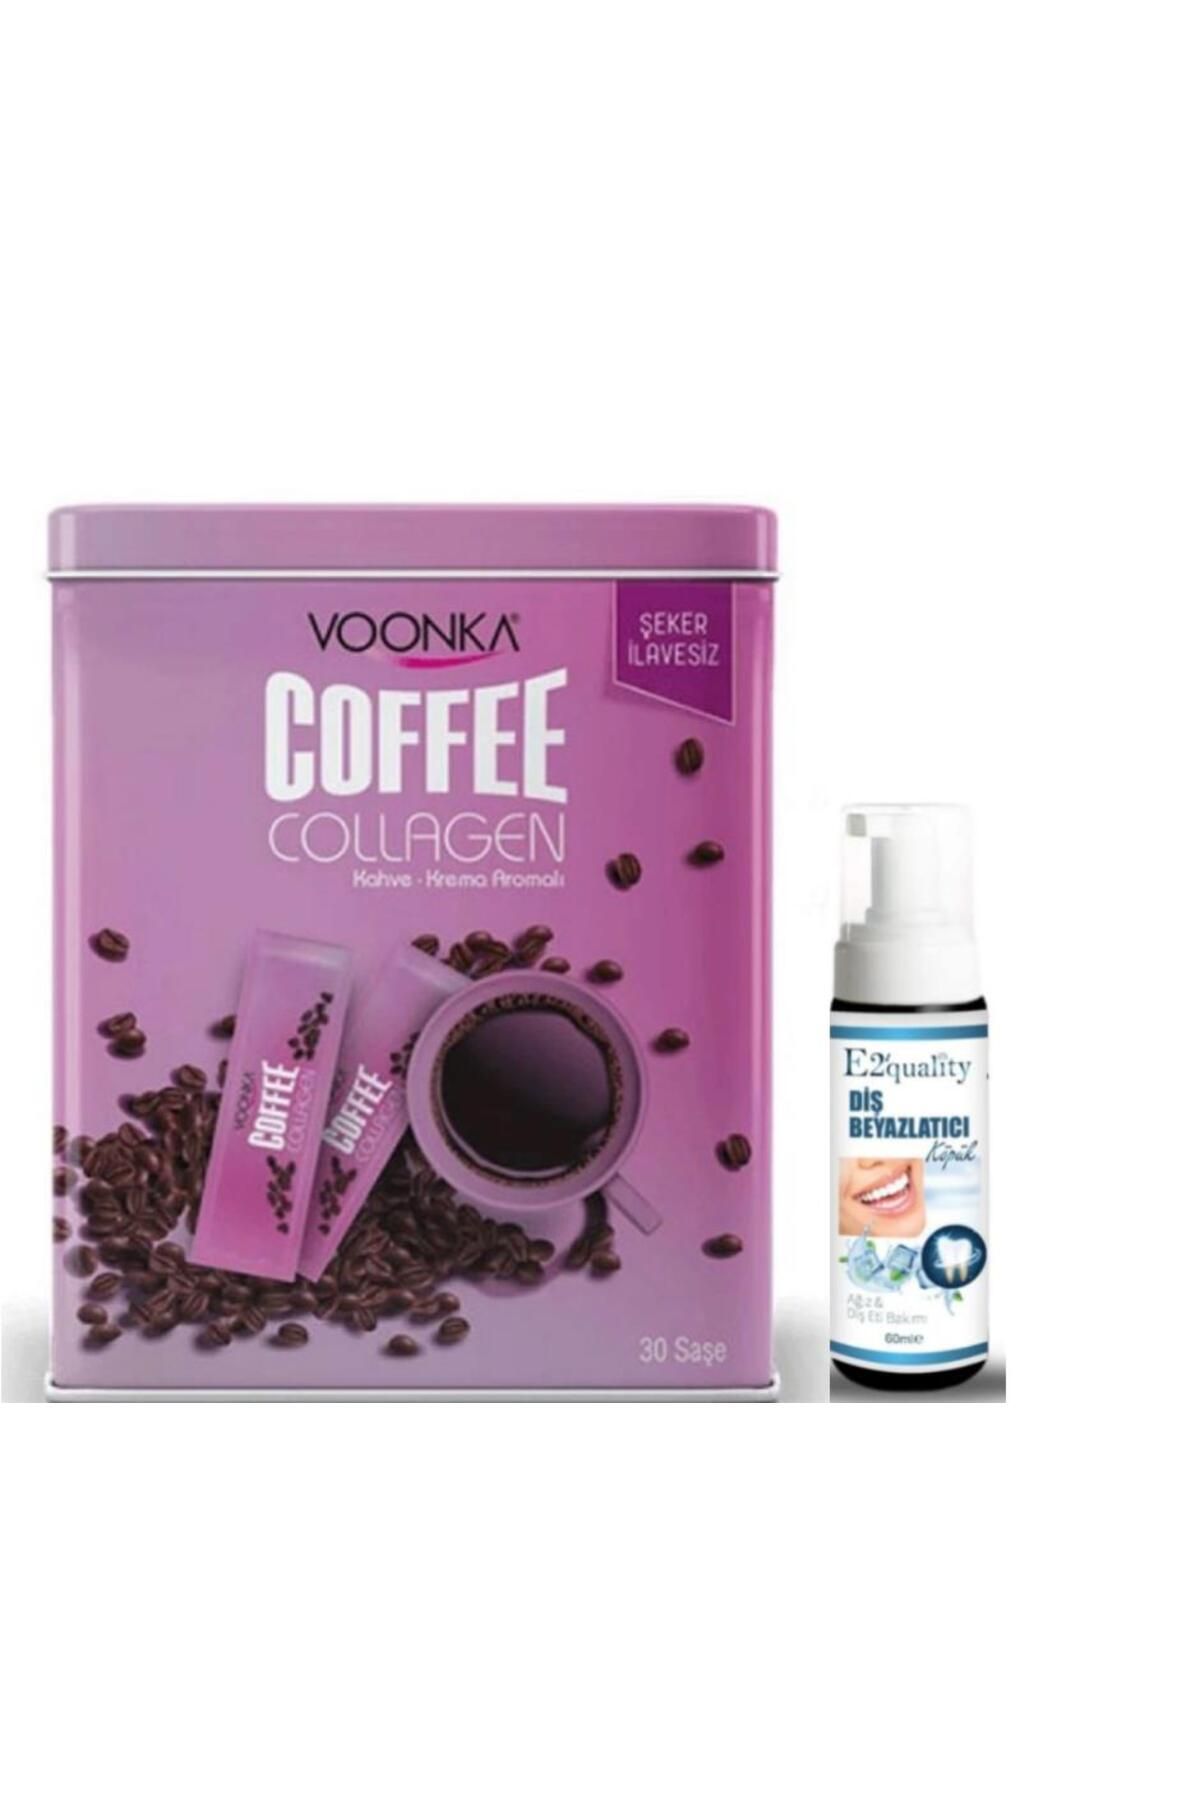 Voonka Coffee Collagen Krema Aromalı Kahve 30 Saşe- Diş Beyazlatıcı Köpük Hediye